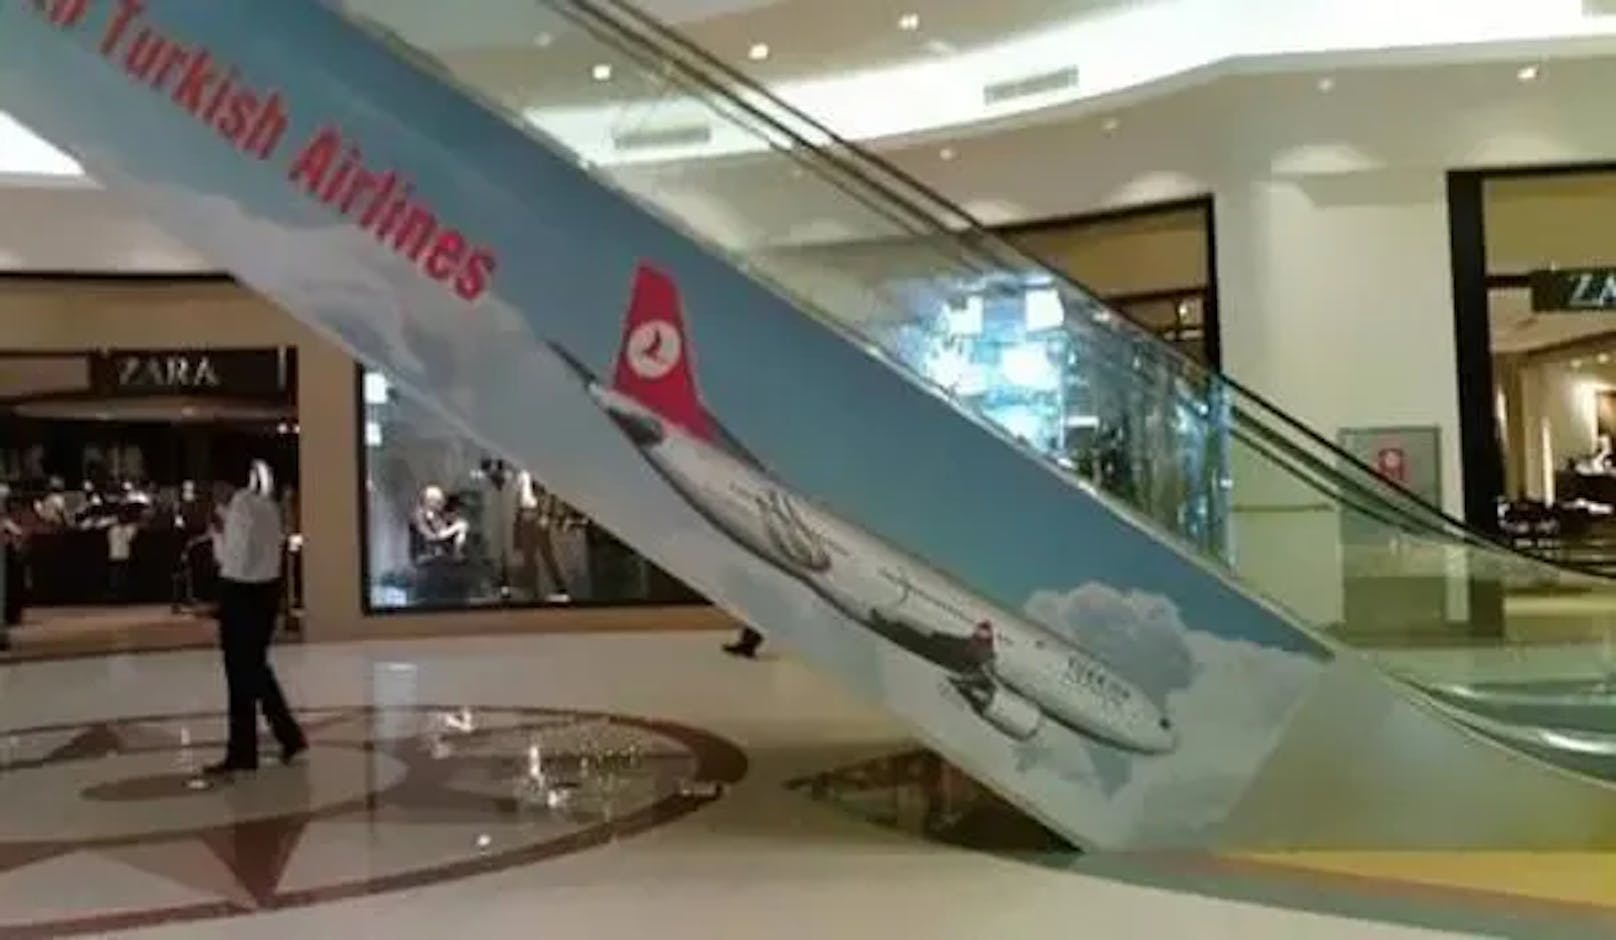 Diese Werbung für die Turkish Airlines ist nicht sehr vorteilhaft platziert – denn das Flugzeug befindet sich im Sturzflug.